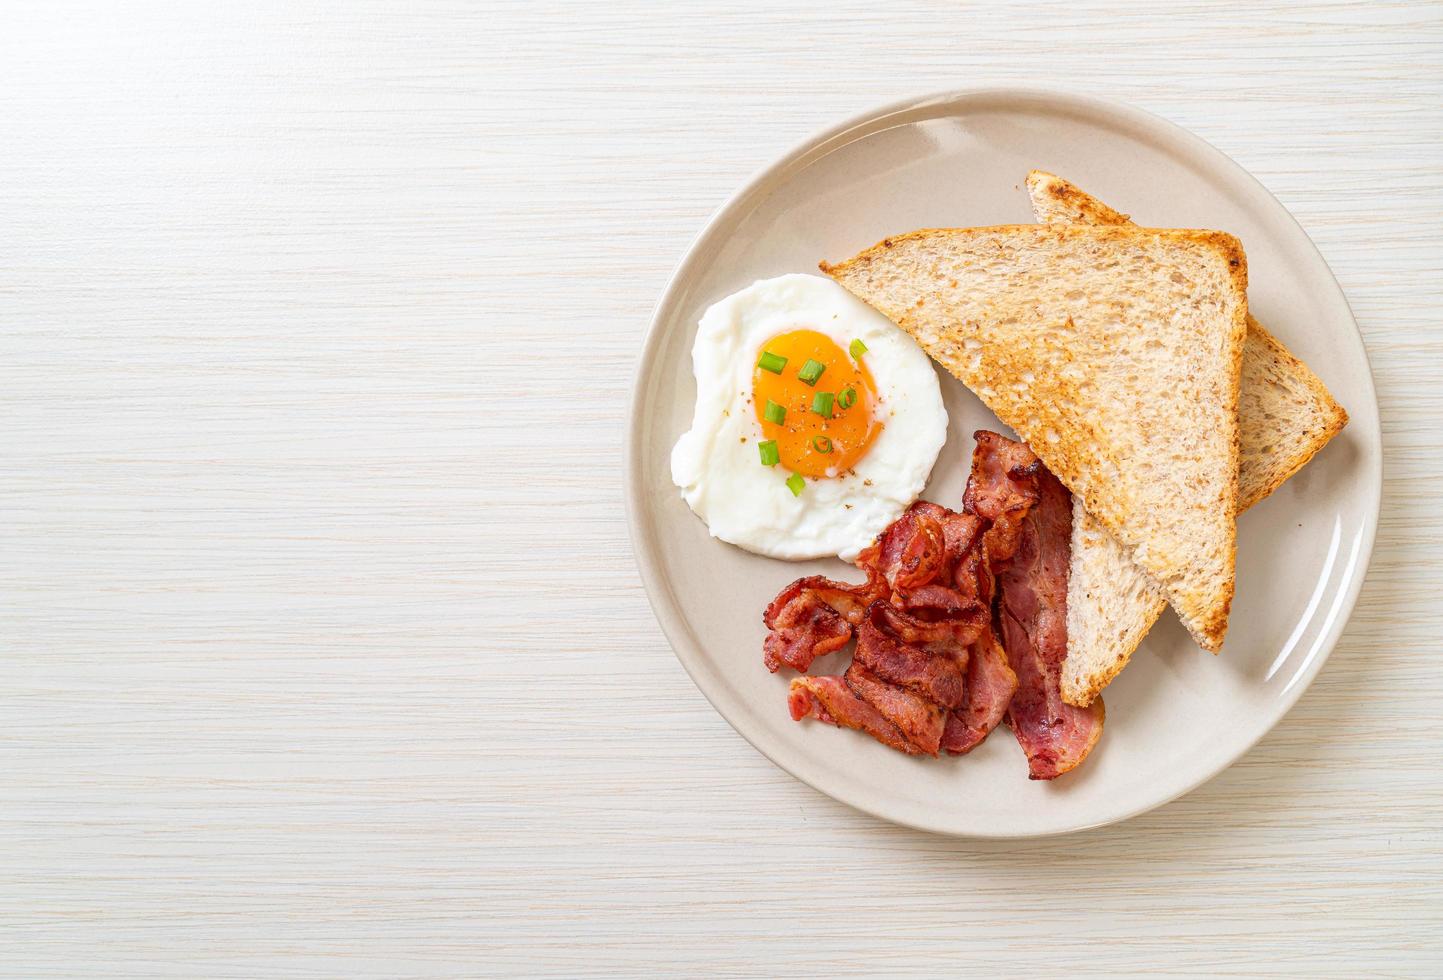 uovo fritto con pane tostato e pancetta a colazione bacon foto